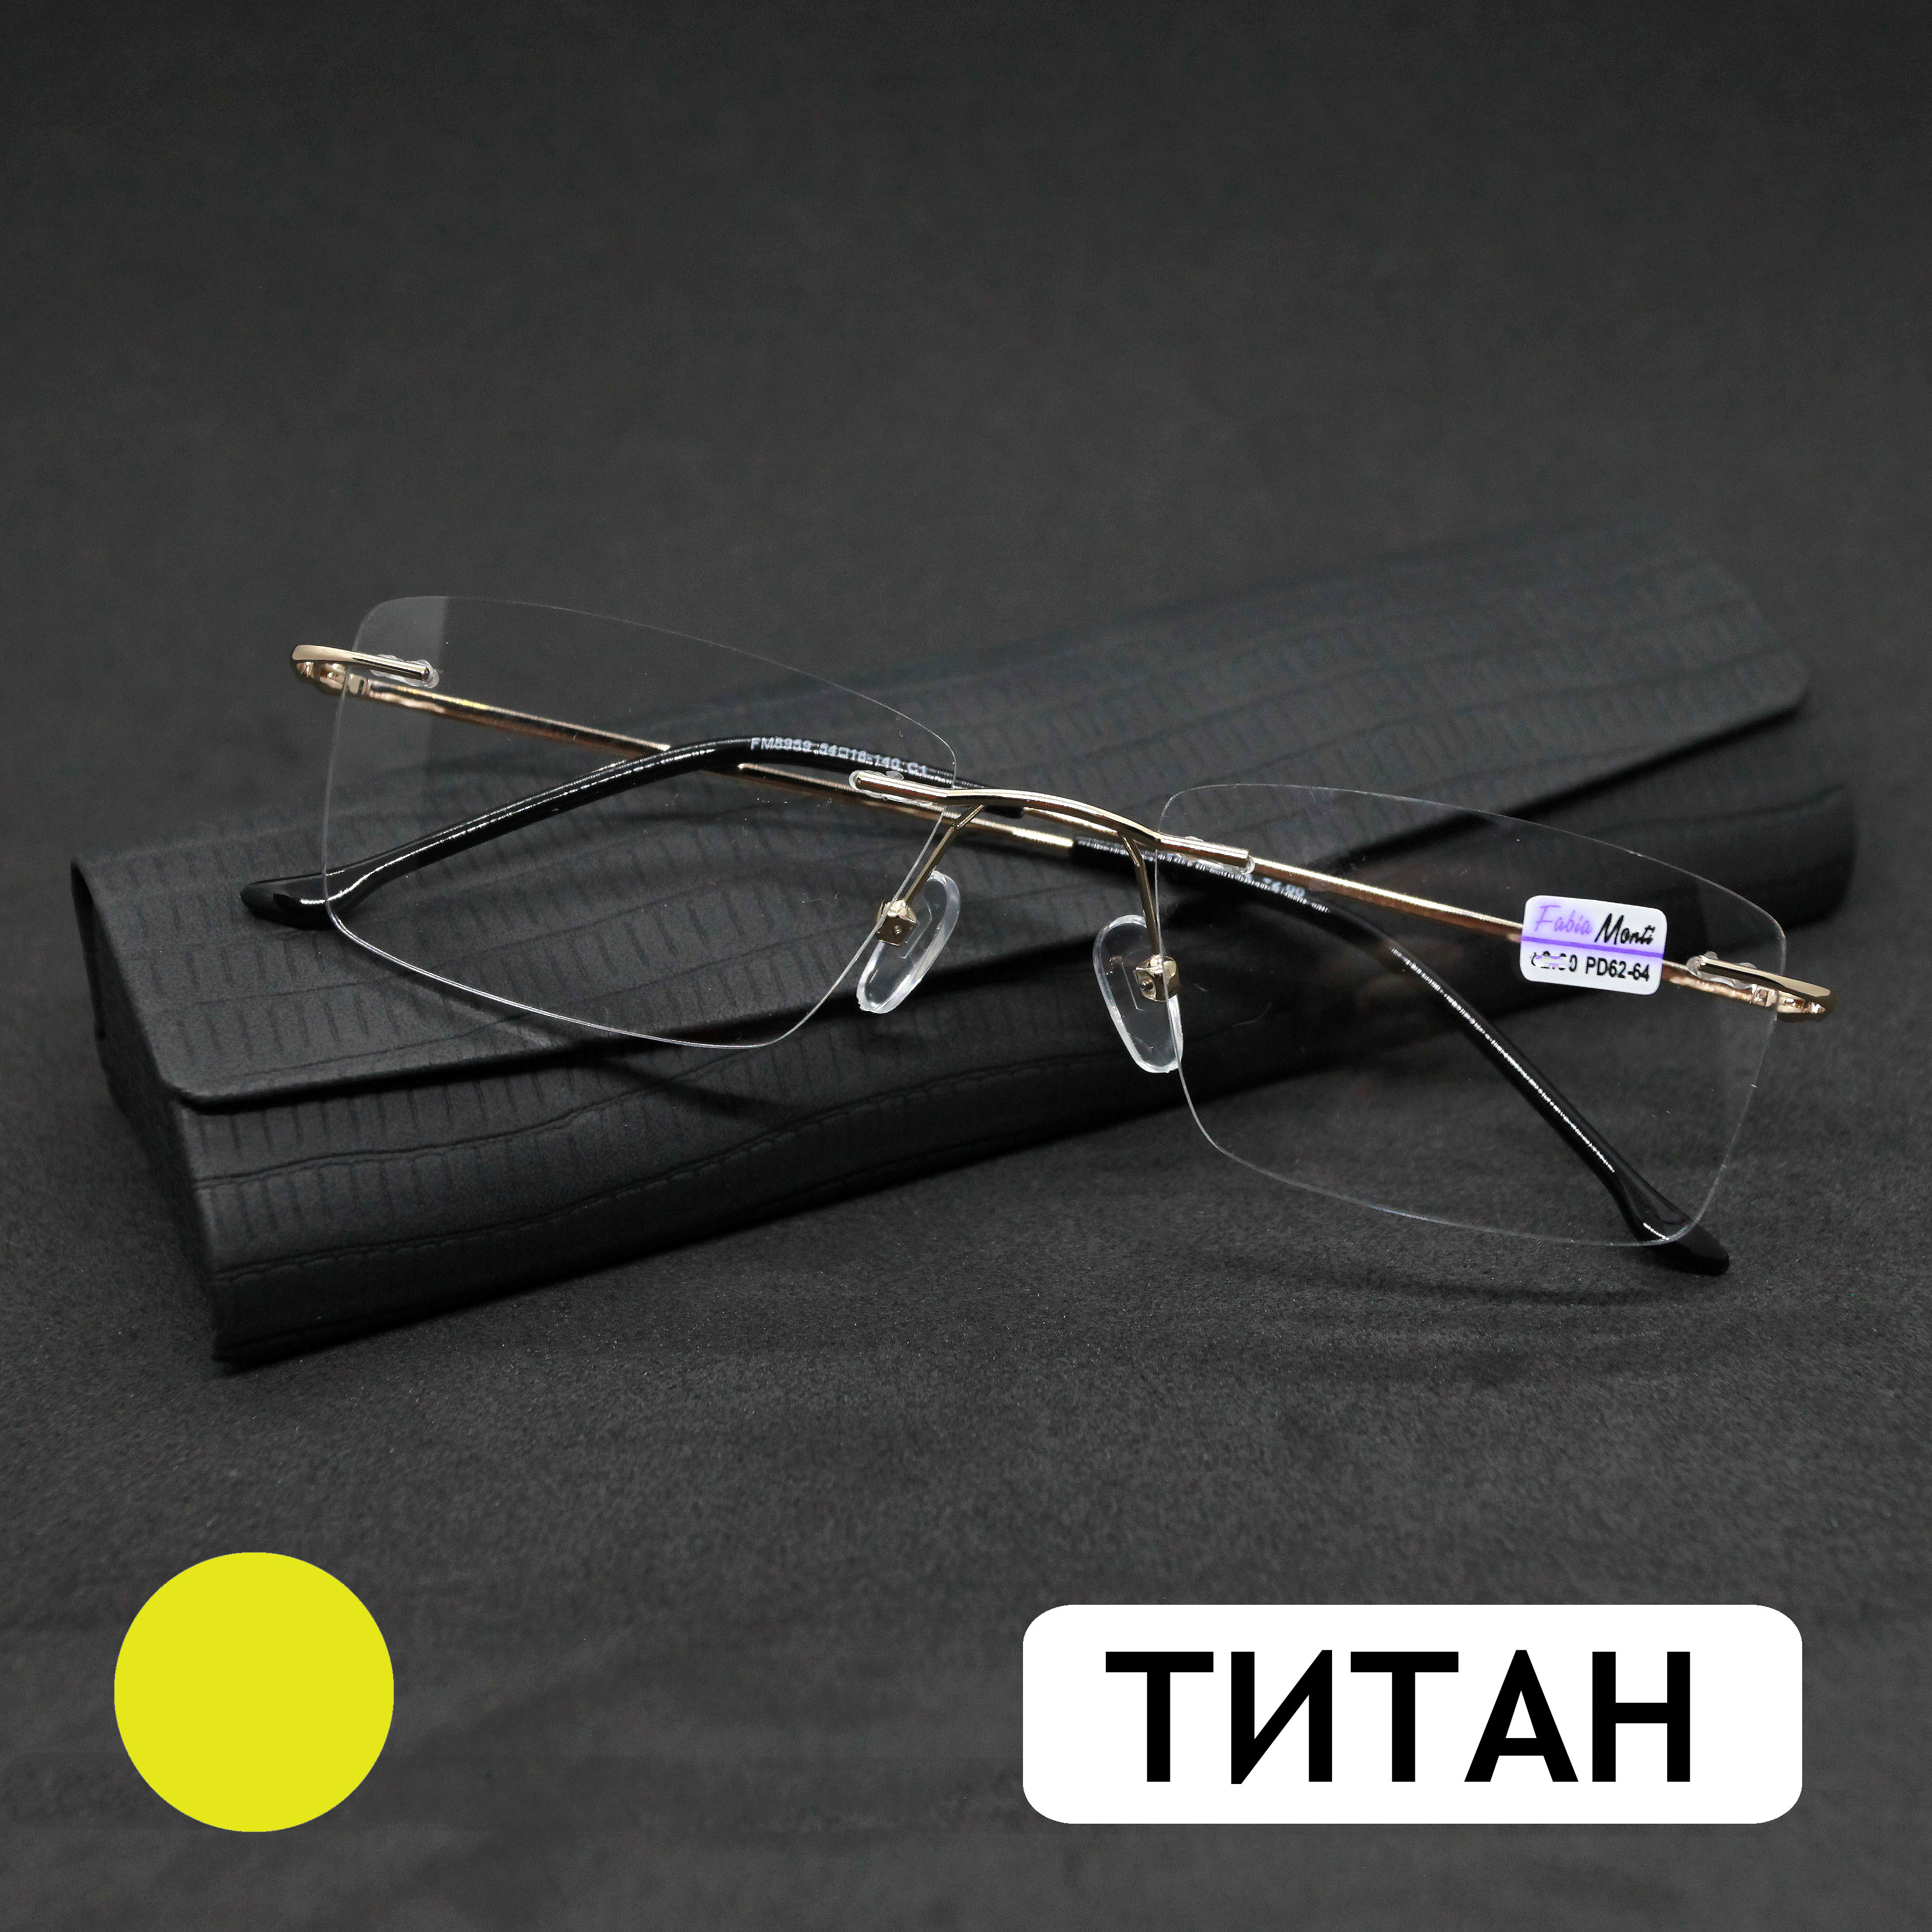 Безободковые очки FM 8959 -1.50, c футляром, оправа титан, золотые, РЦ 62-64